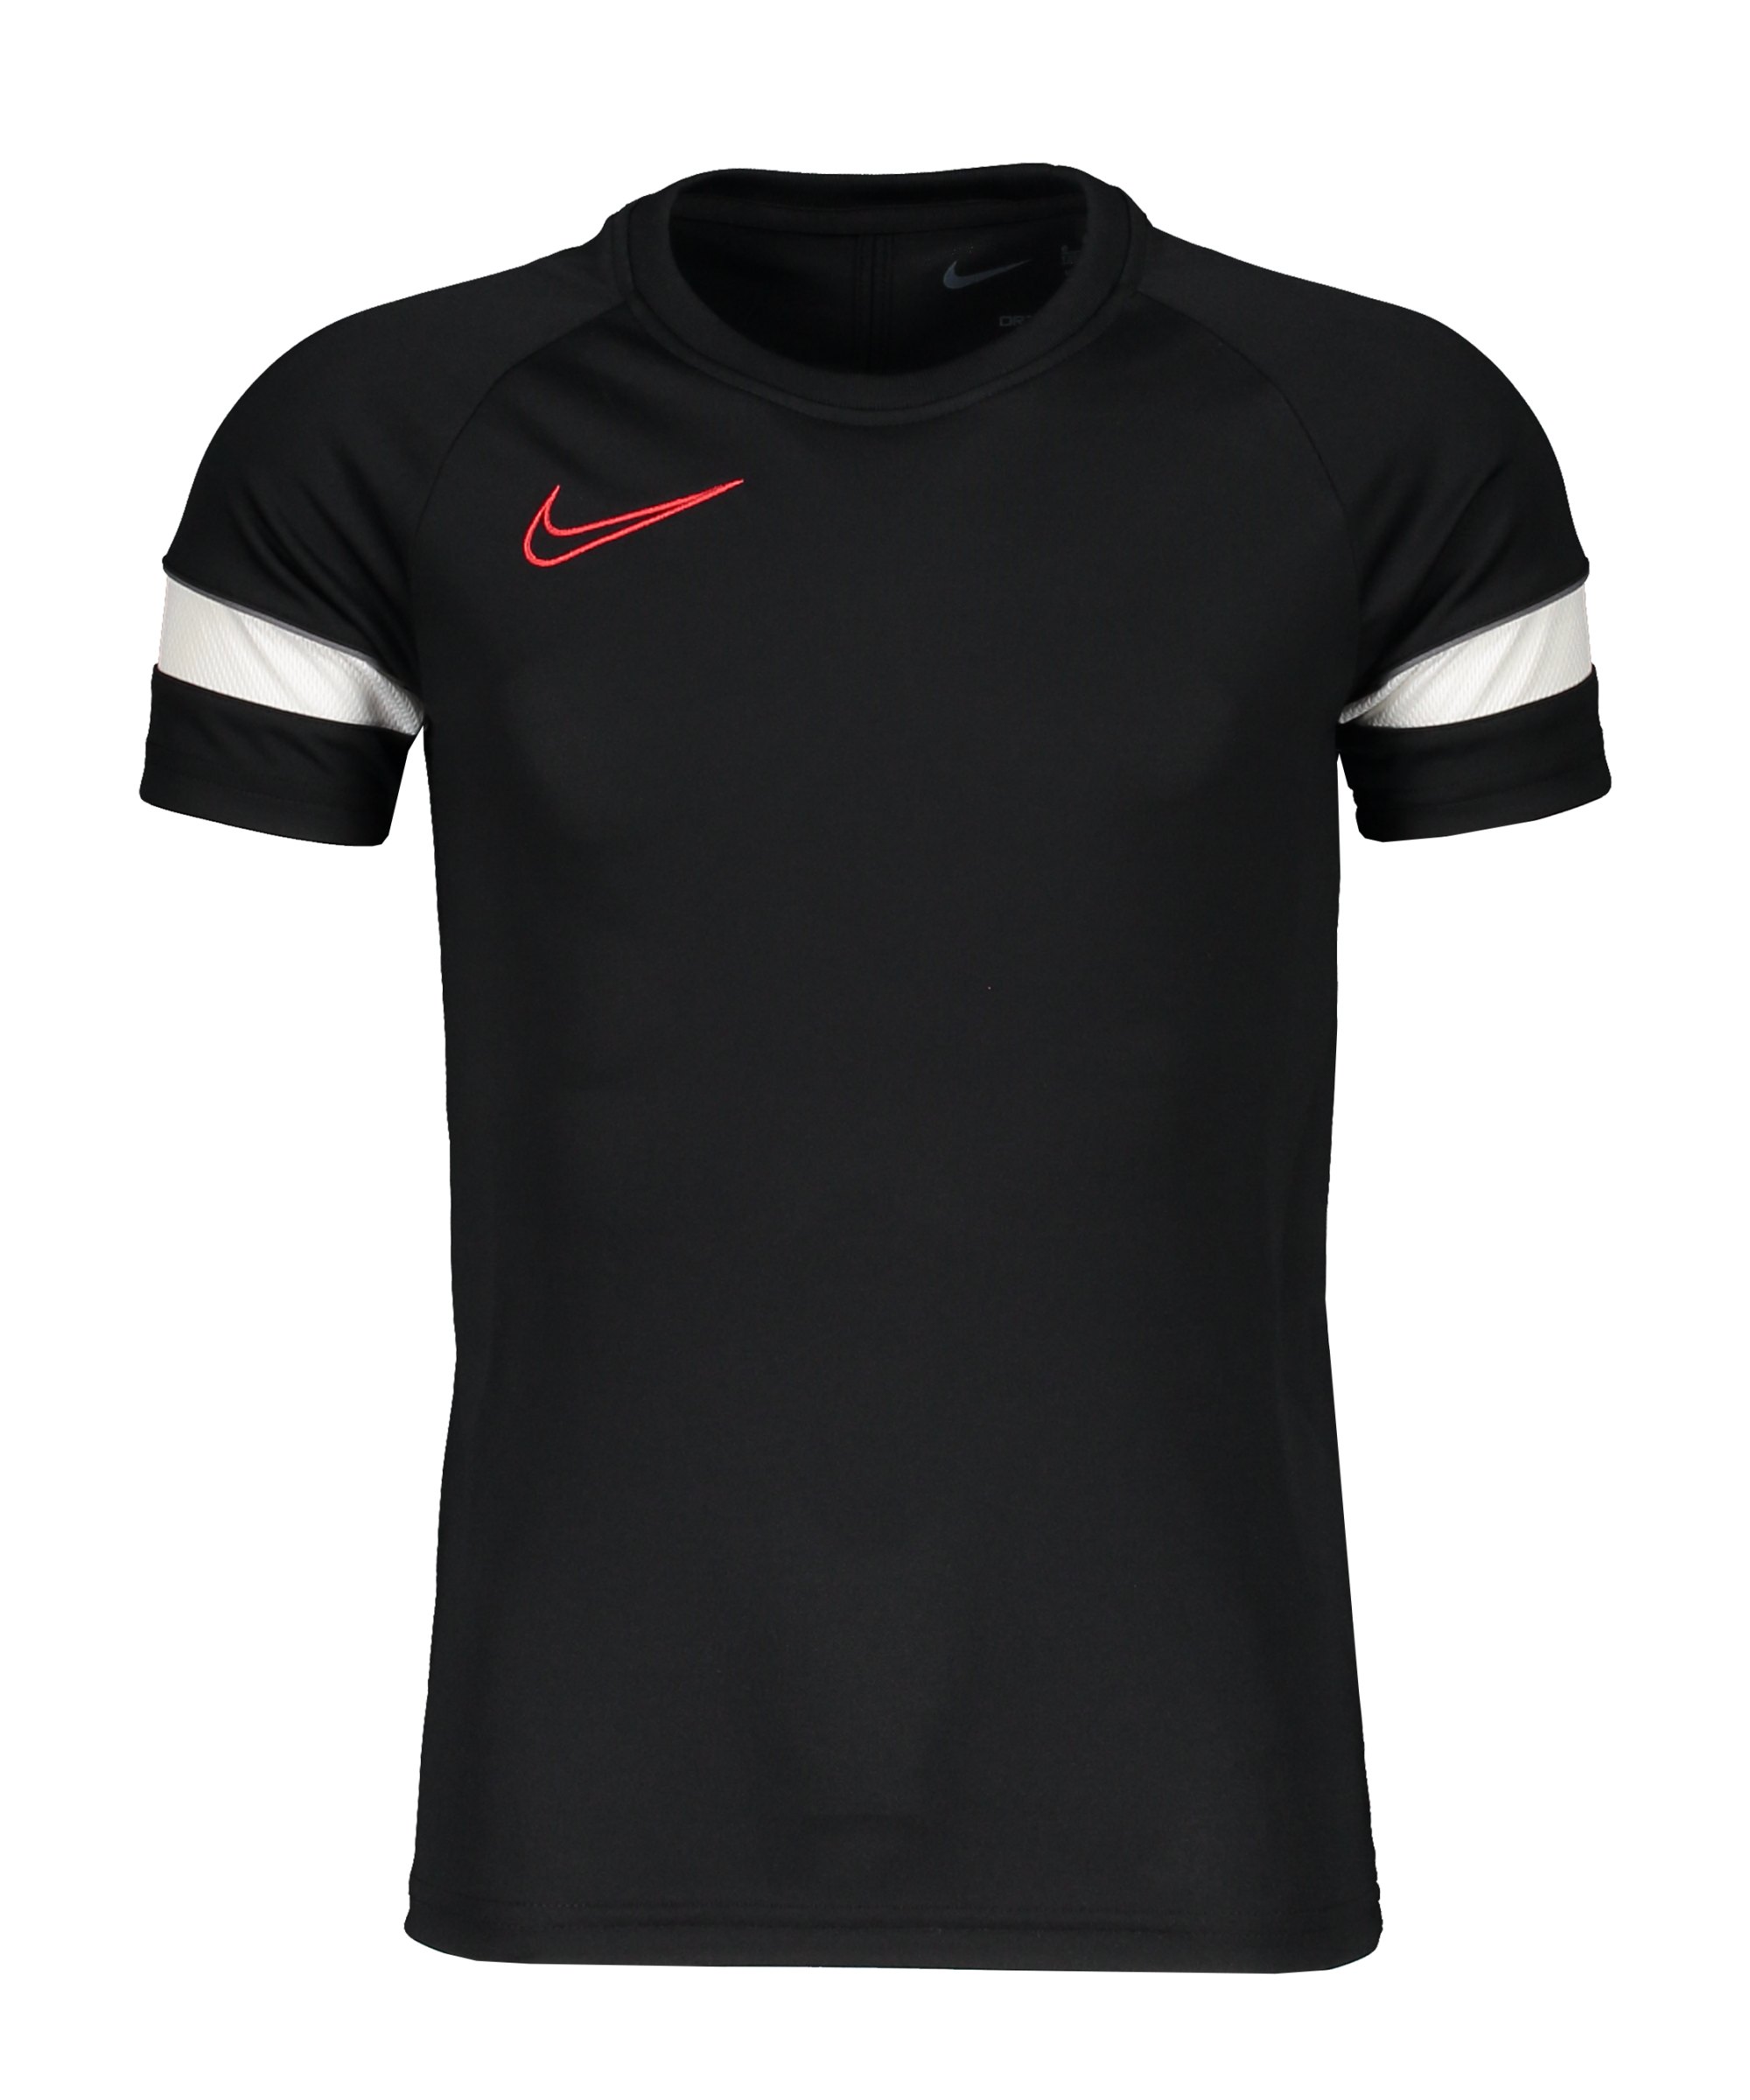 Nike Academy 21 T-Shirt Kids Schwarz Grau F013 - schwarz